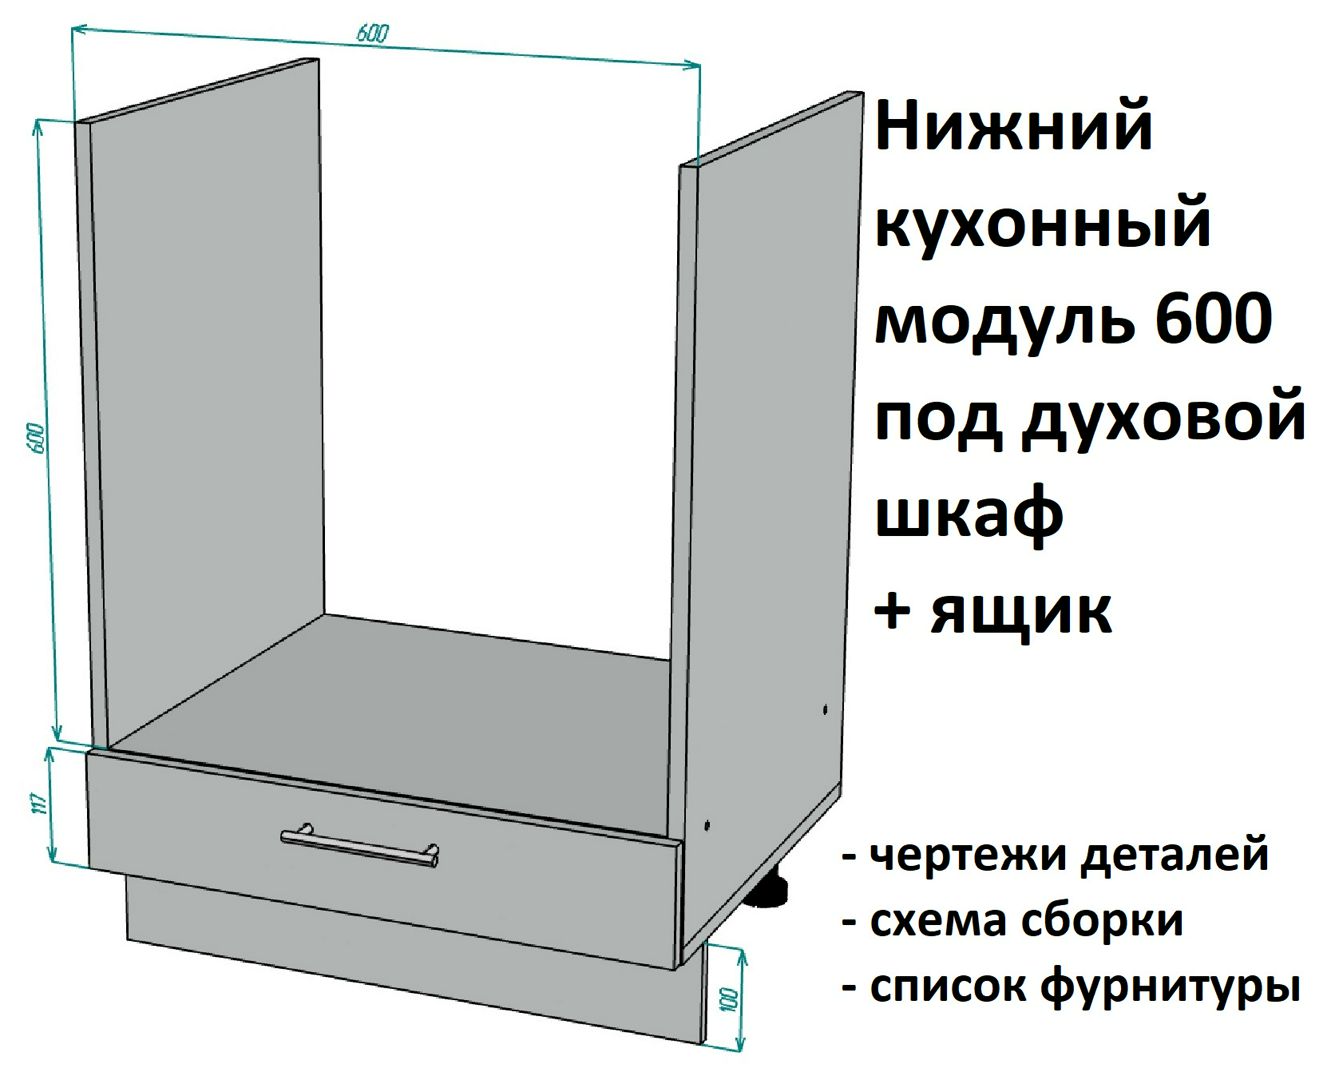 Нижний кухонный модуль 600 под духовой шкаф с дополнительным ящиком - Комплект чертежей